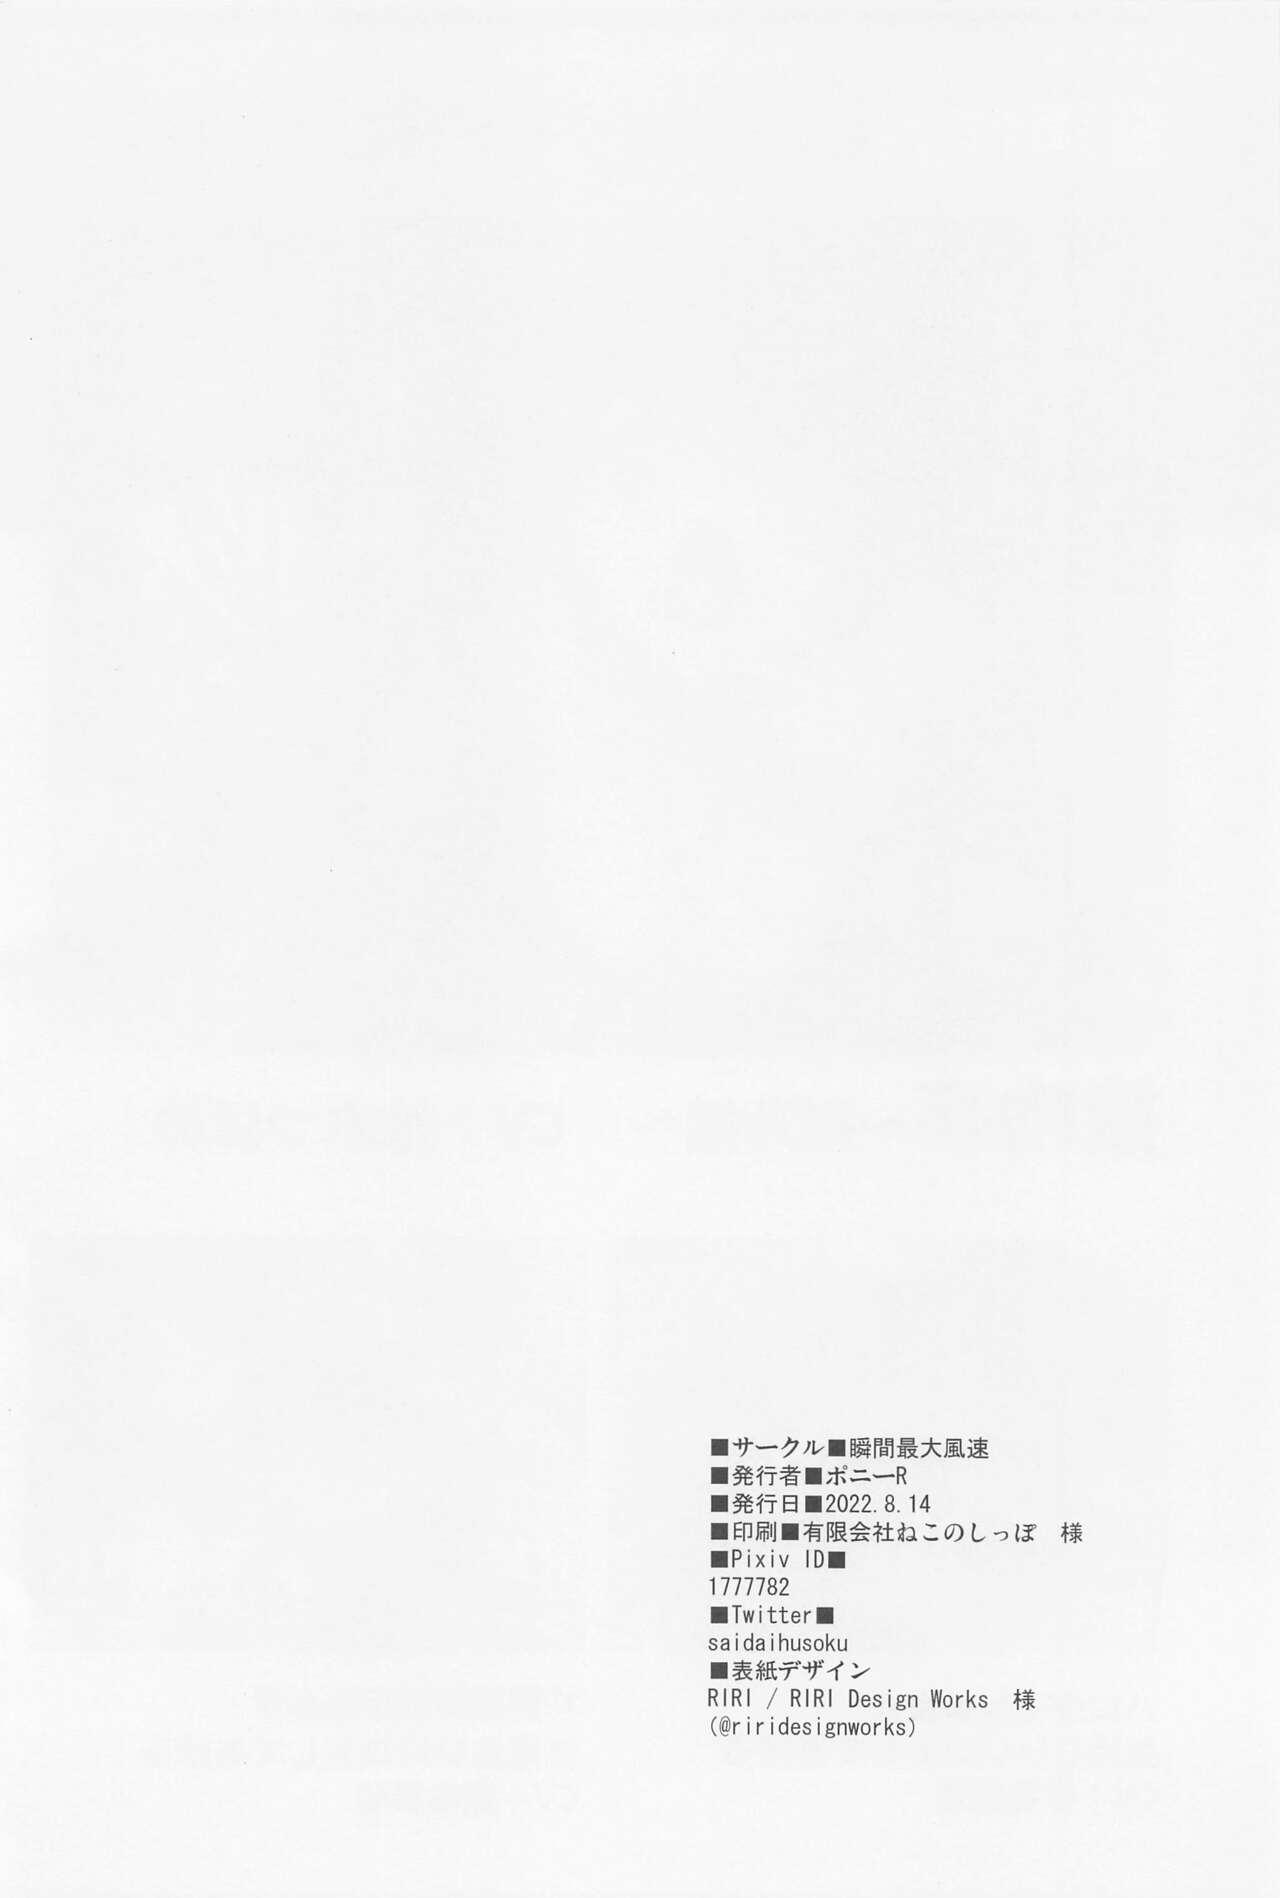 Brazzers okuchisukebekaranonokokisuhamesoshuhen - Fate grand order Best - Page 105